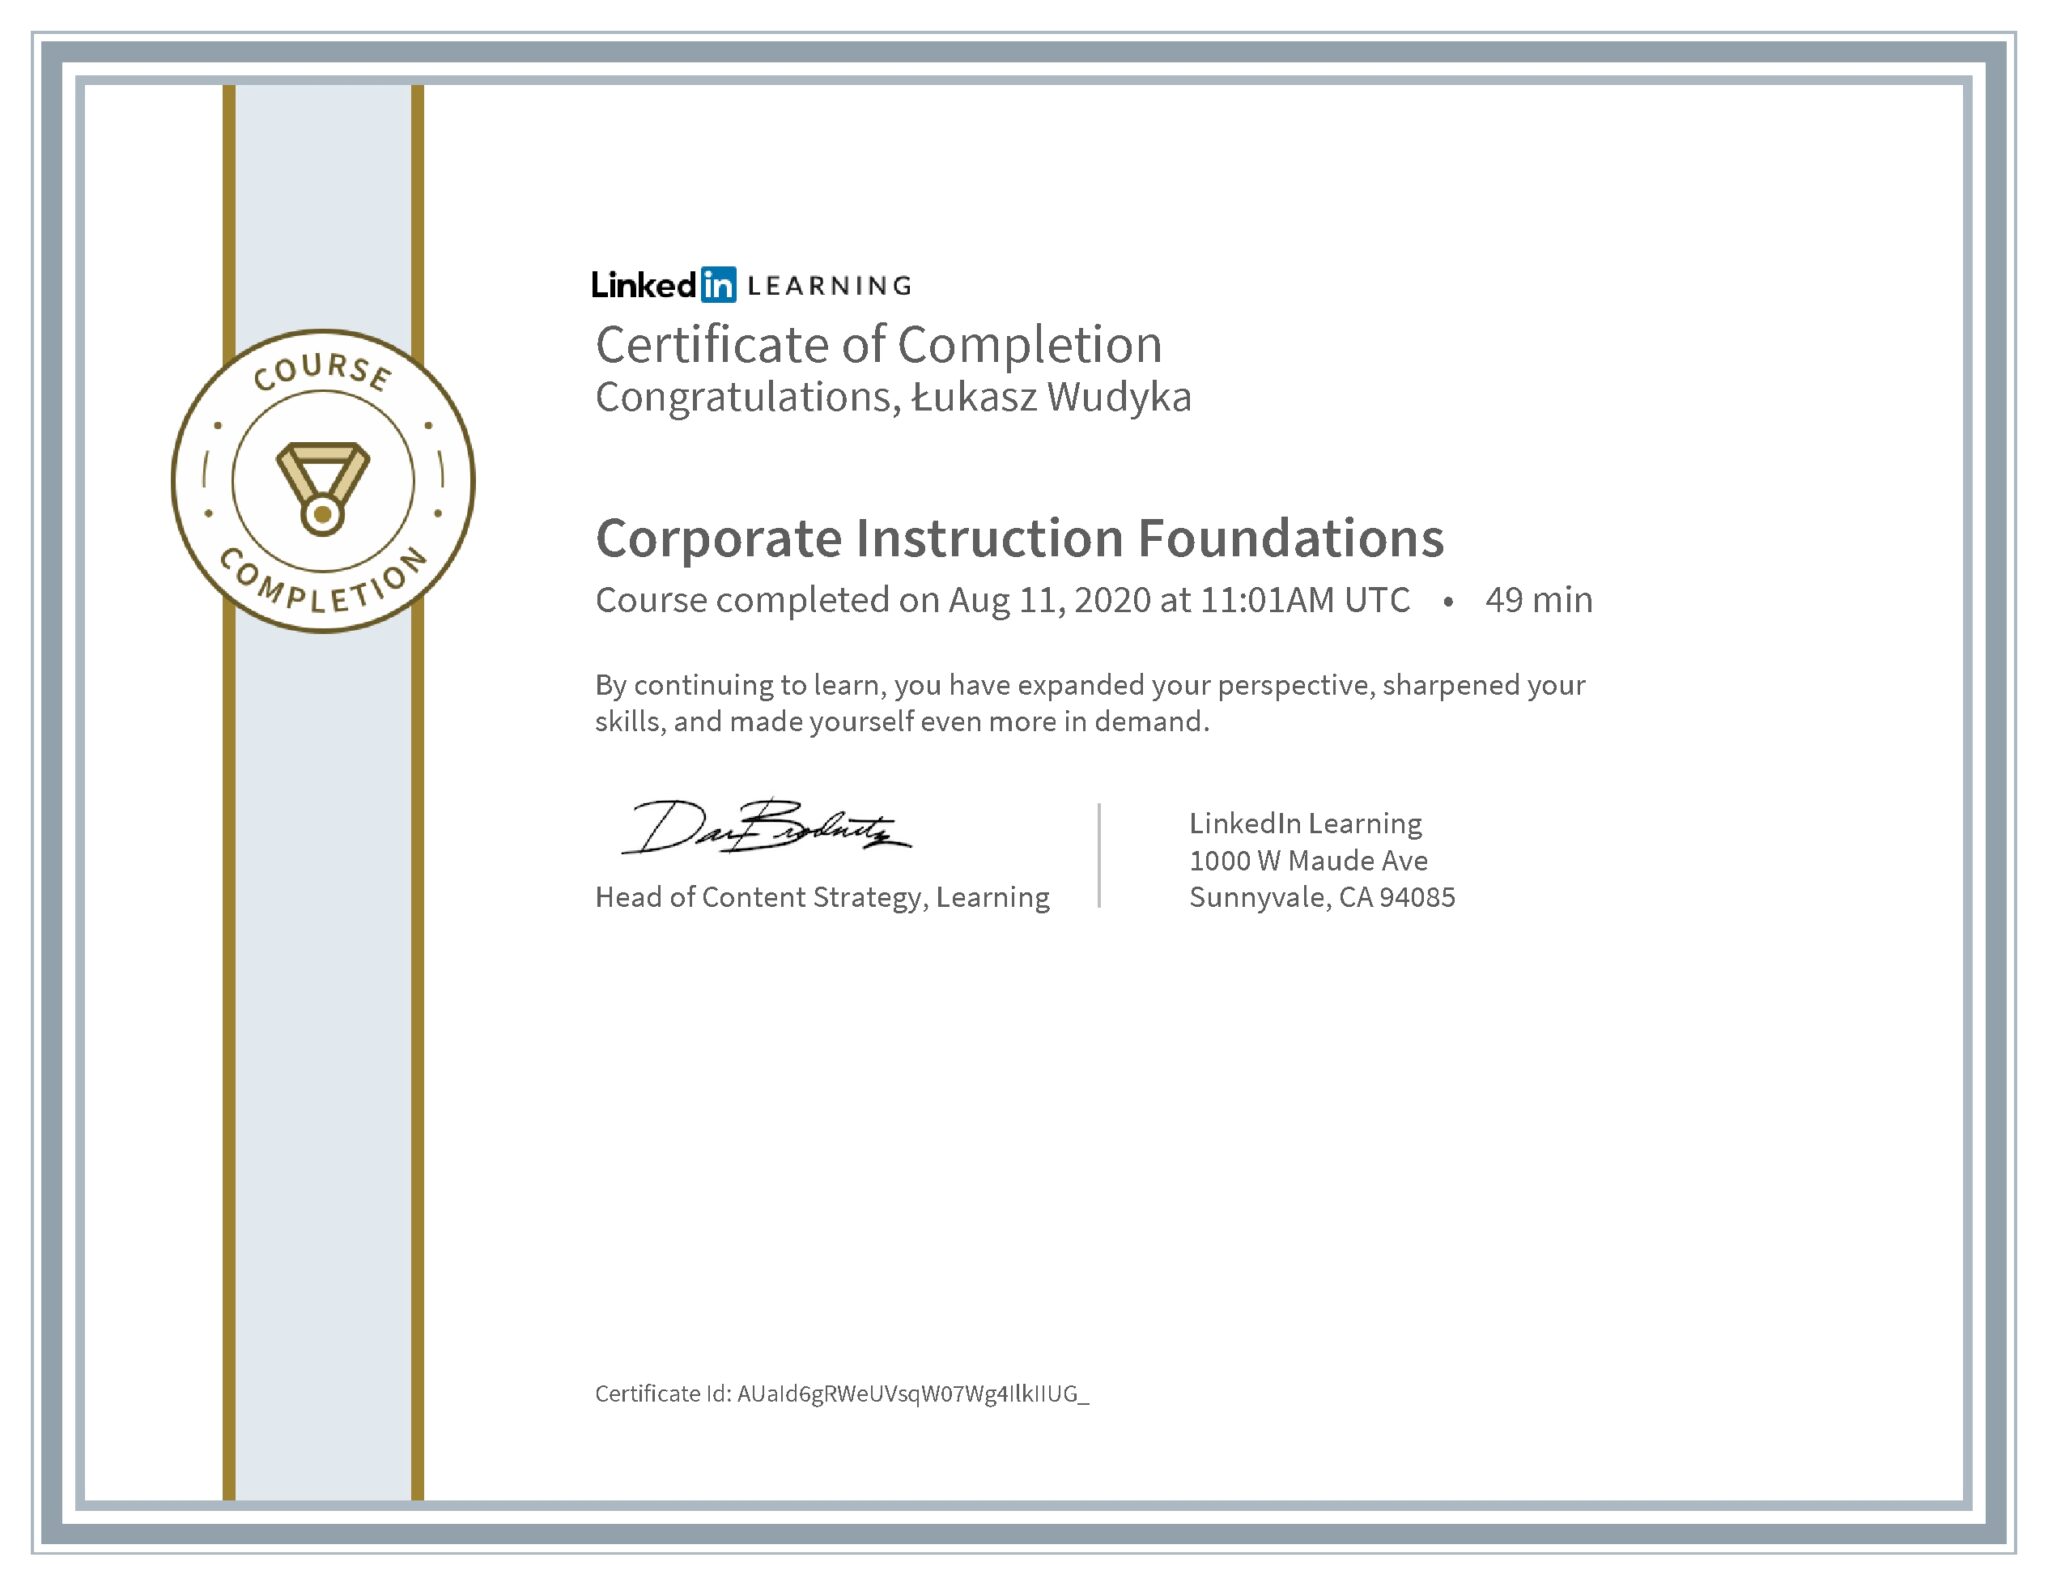 Łukasz Wudyka certyfikat LinkedIn Corporate Instruction Foundations